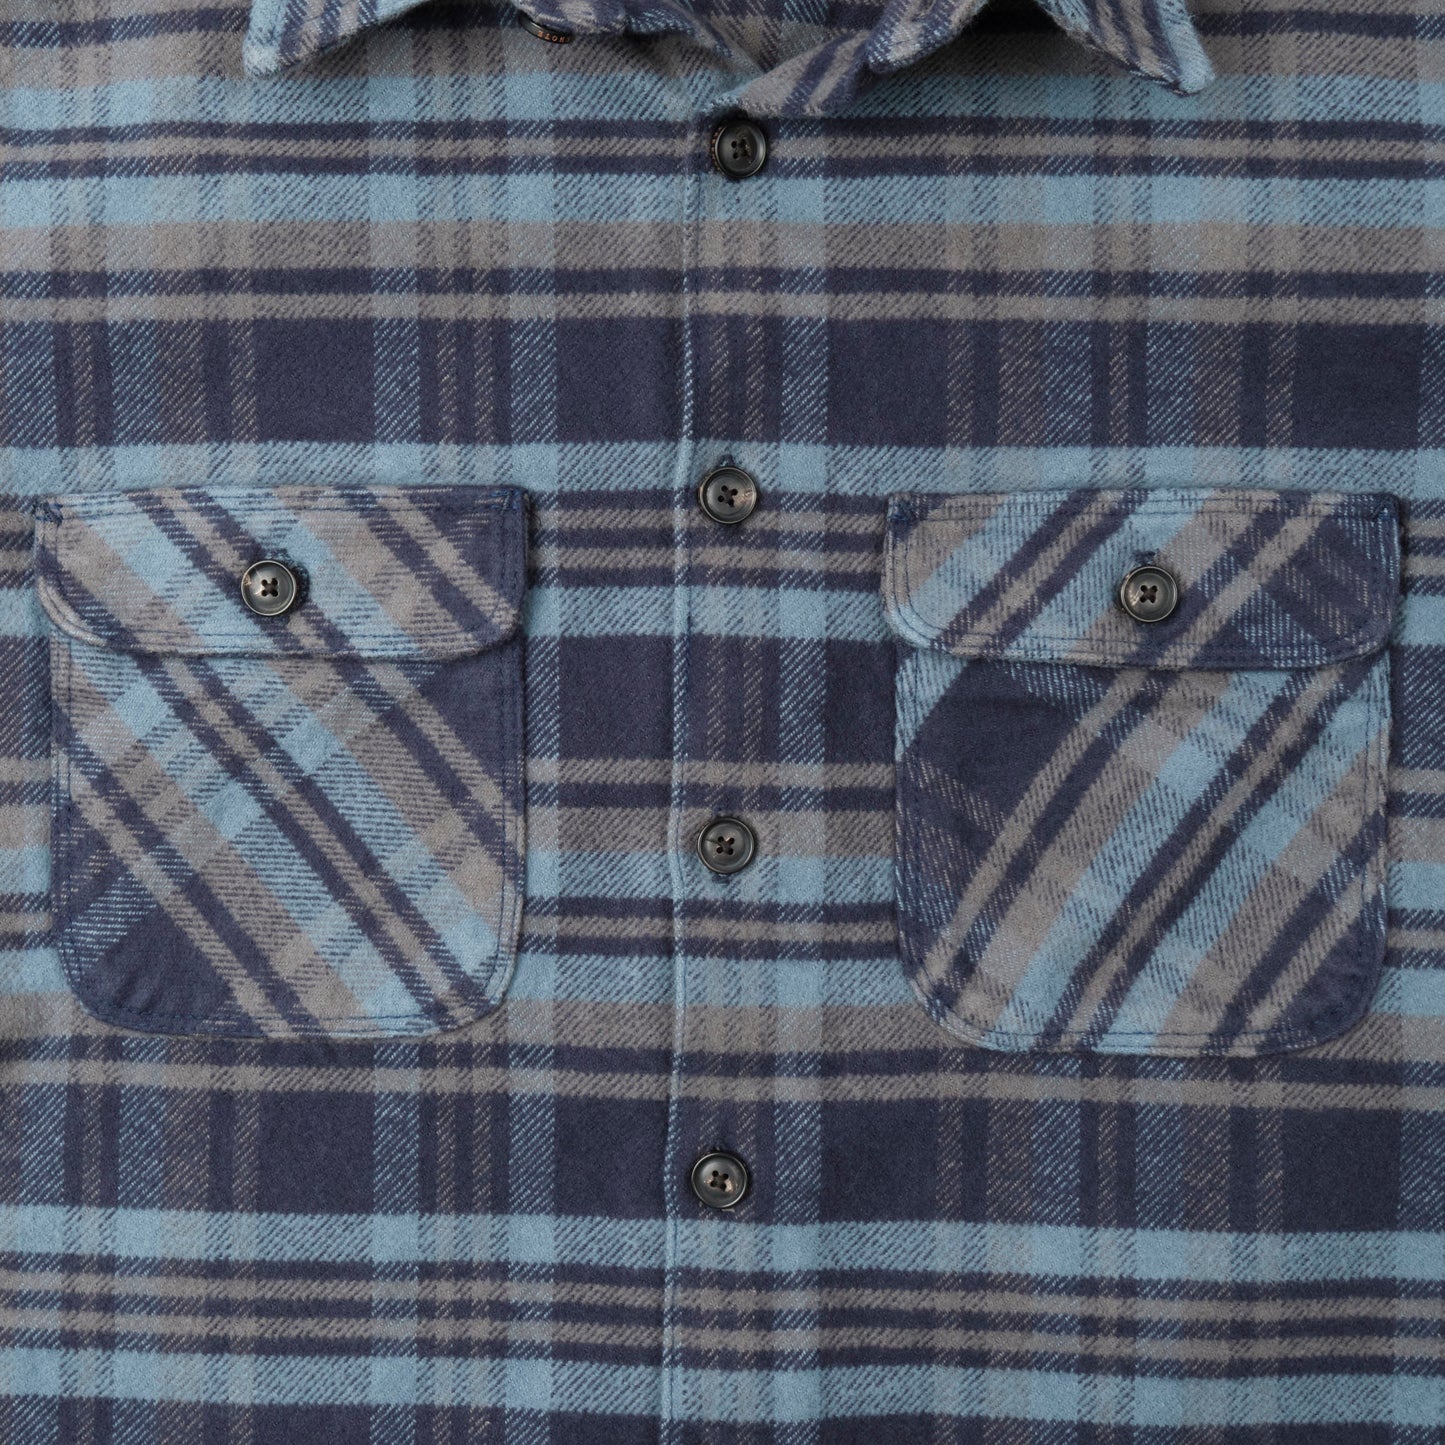 Freenote - Shirt - Benson Cobalt Blue Flannel